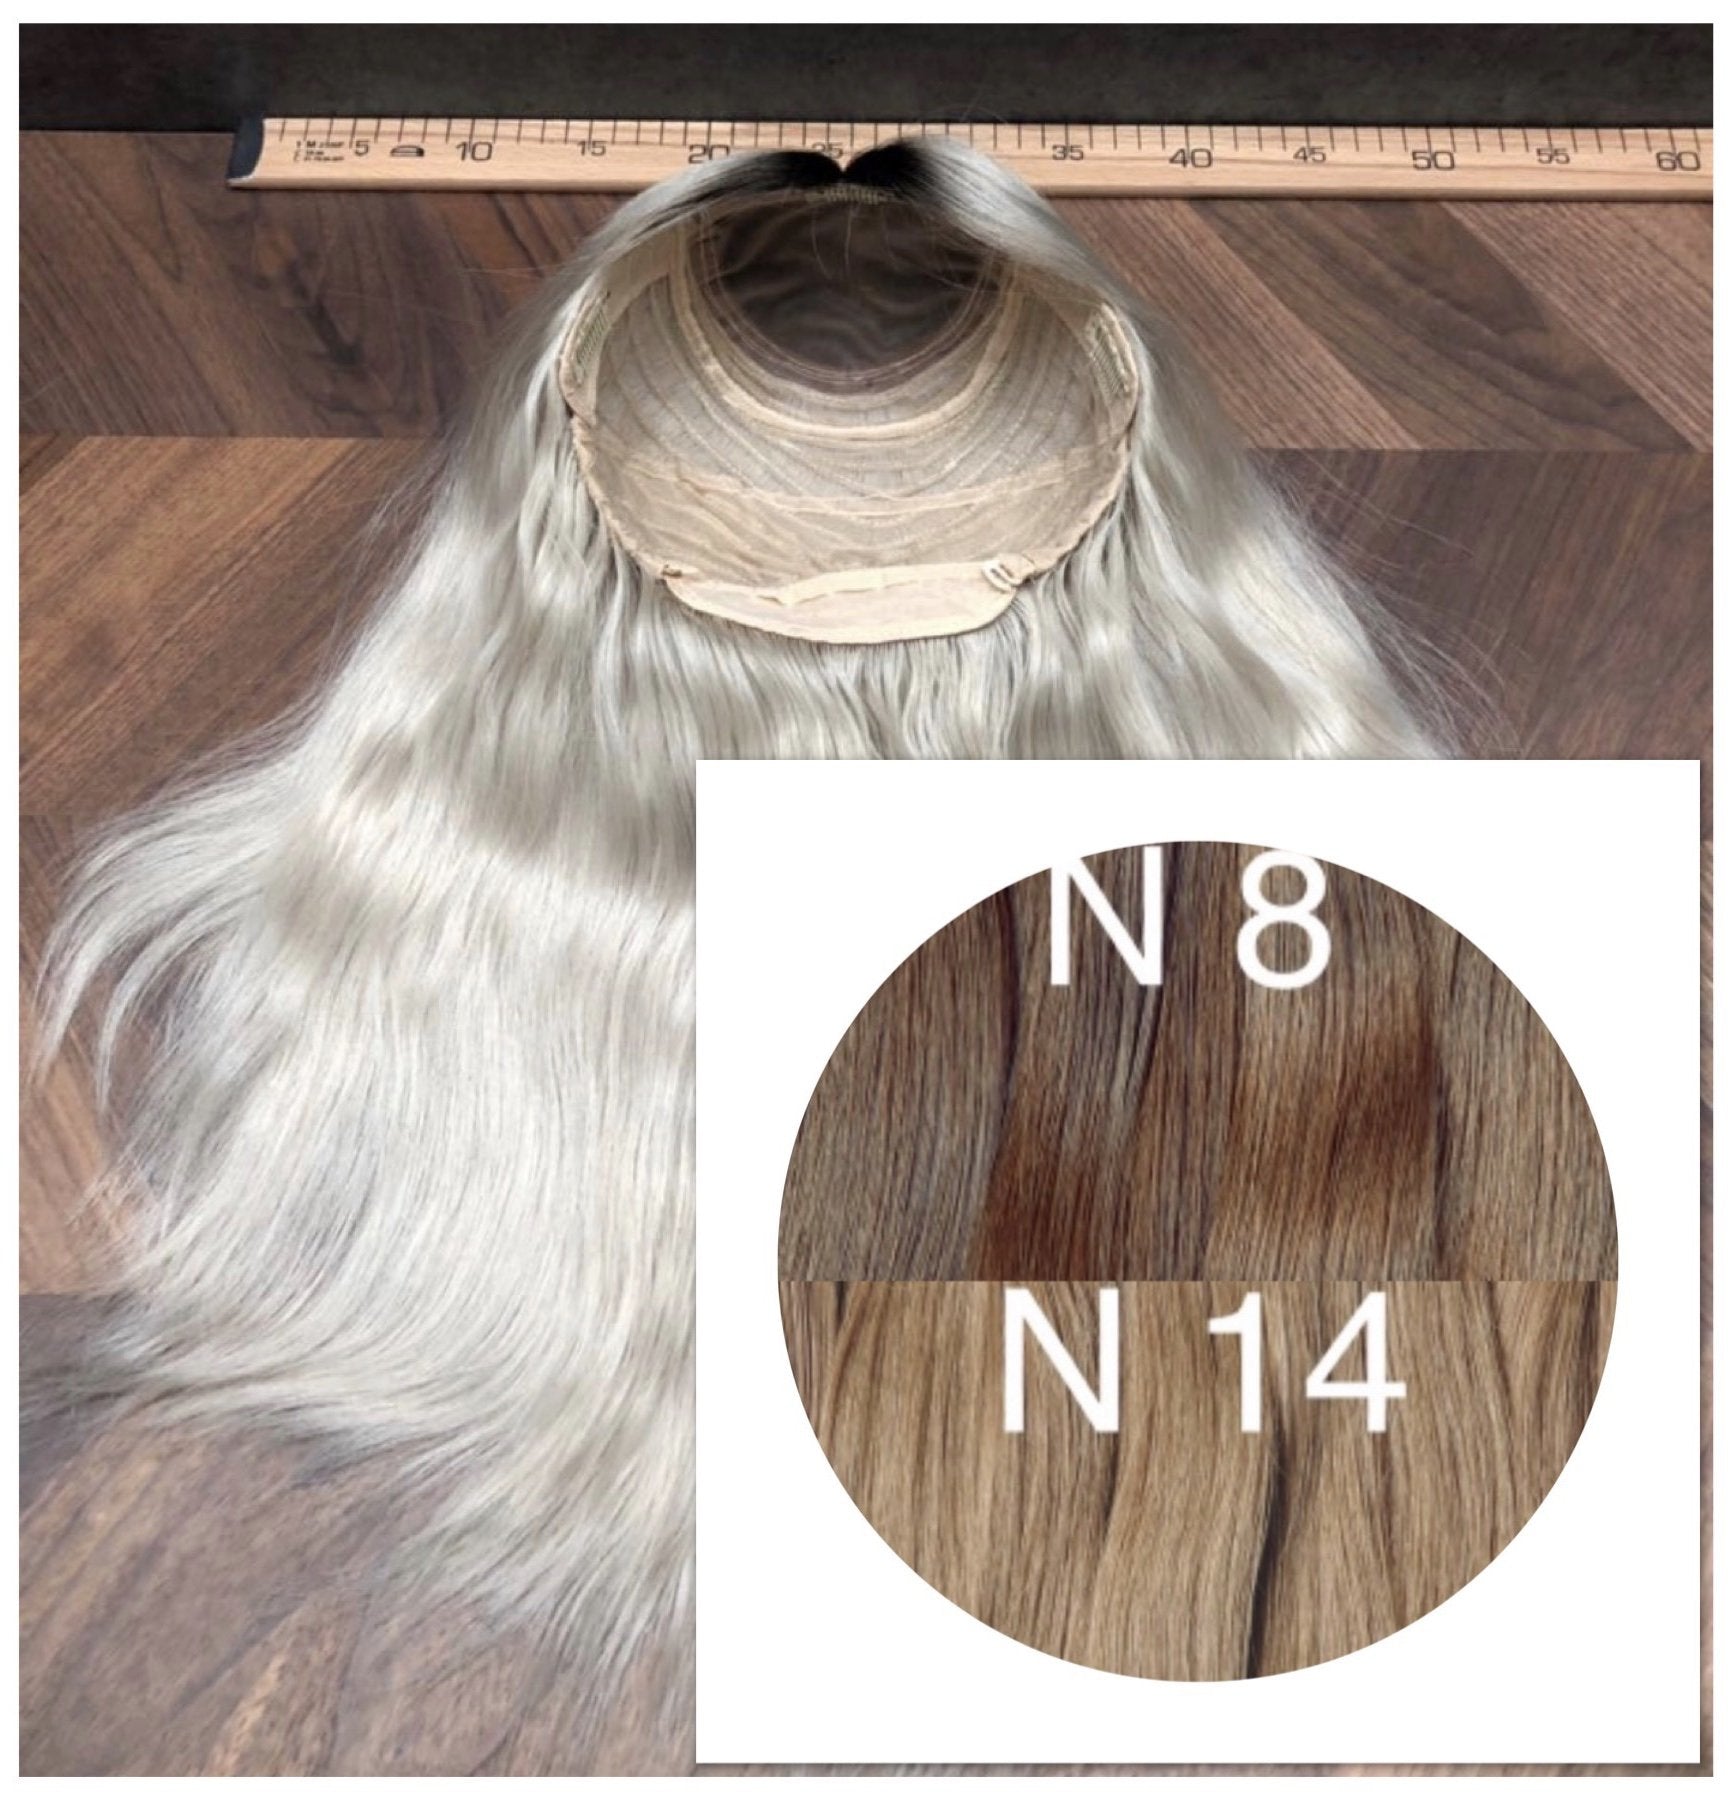 Wigs Ombre 8 and 14 Color GVA hair - GVA hair